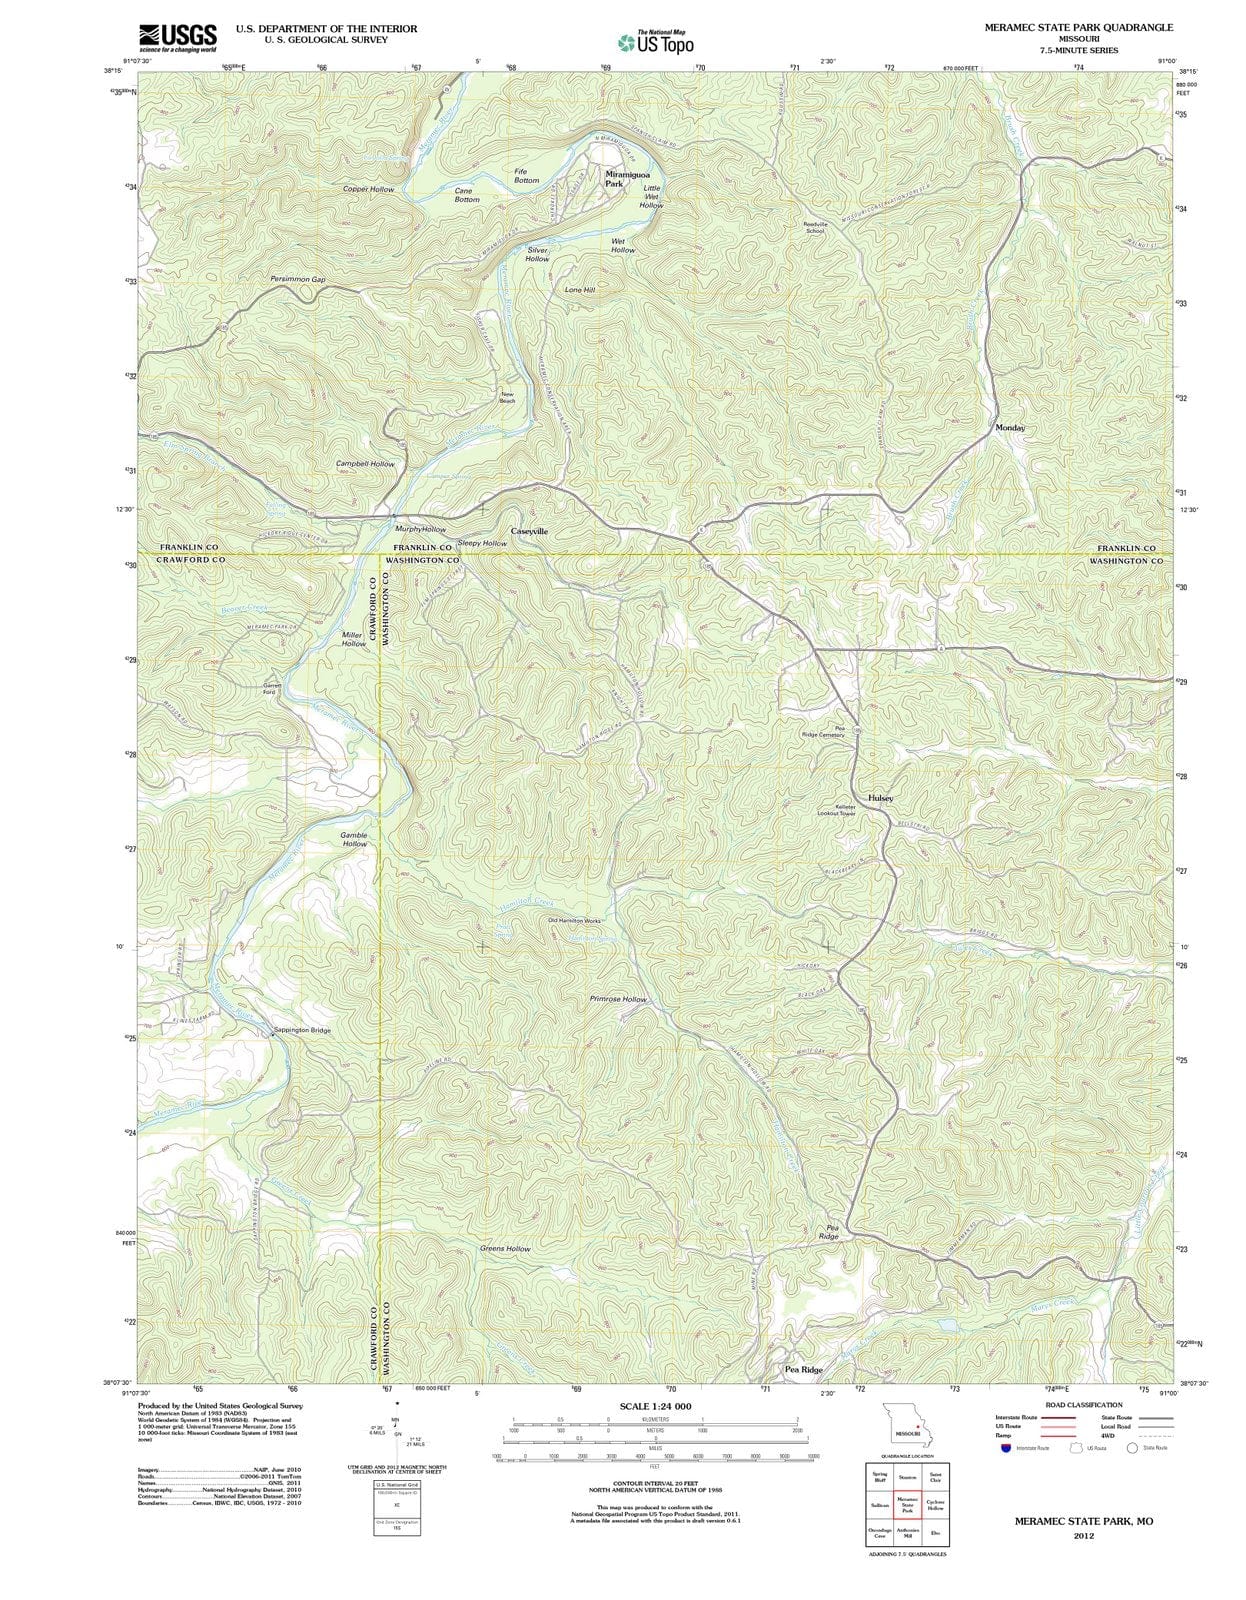 2012 Meramec State Park, MO - Missouri - USGS Topographic Map